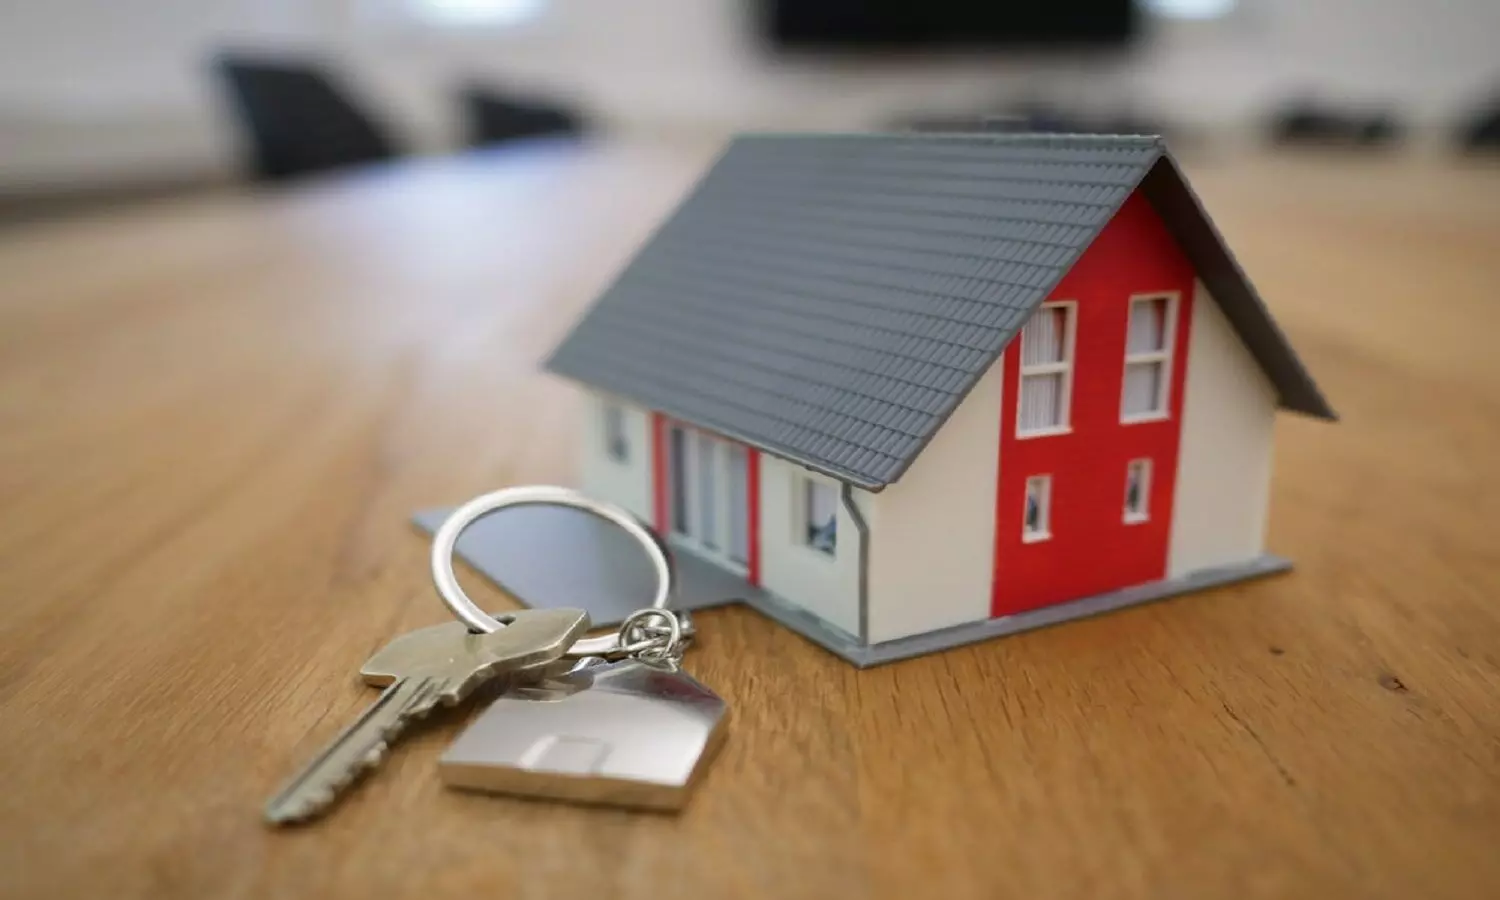 Astro Upay For Home: घर खरीदने में आ रही समस्या तो कर सकते है यह उपाय, सपना होगा पूरा